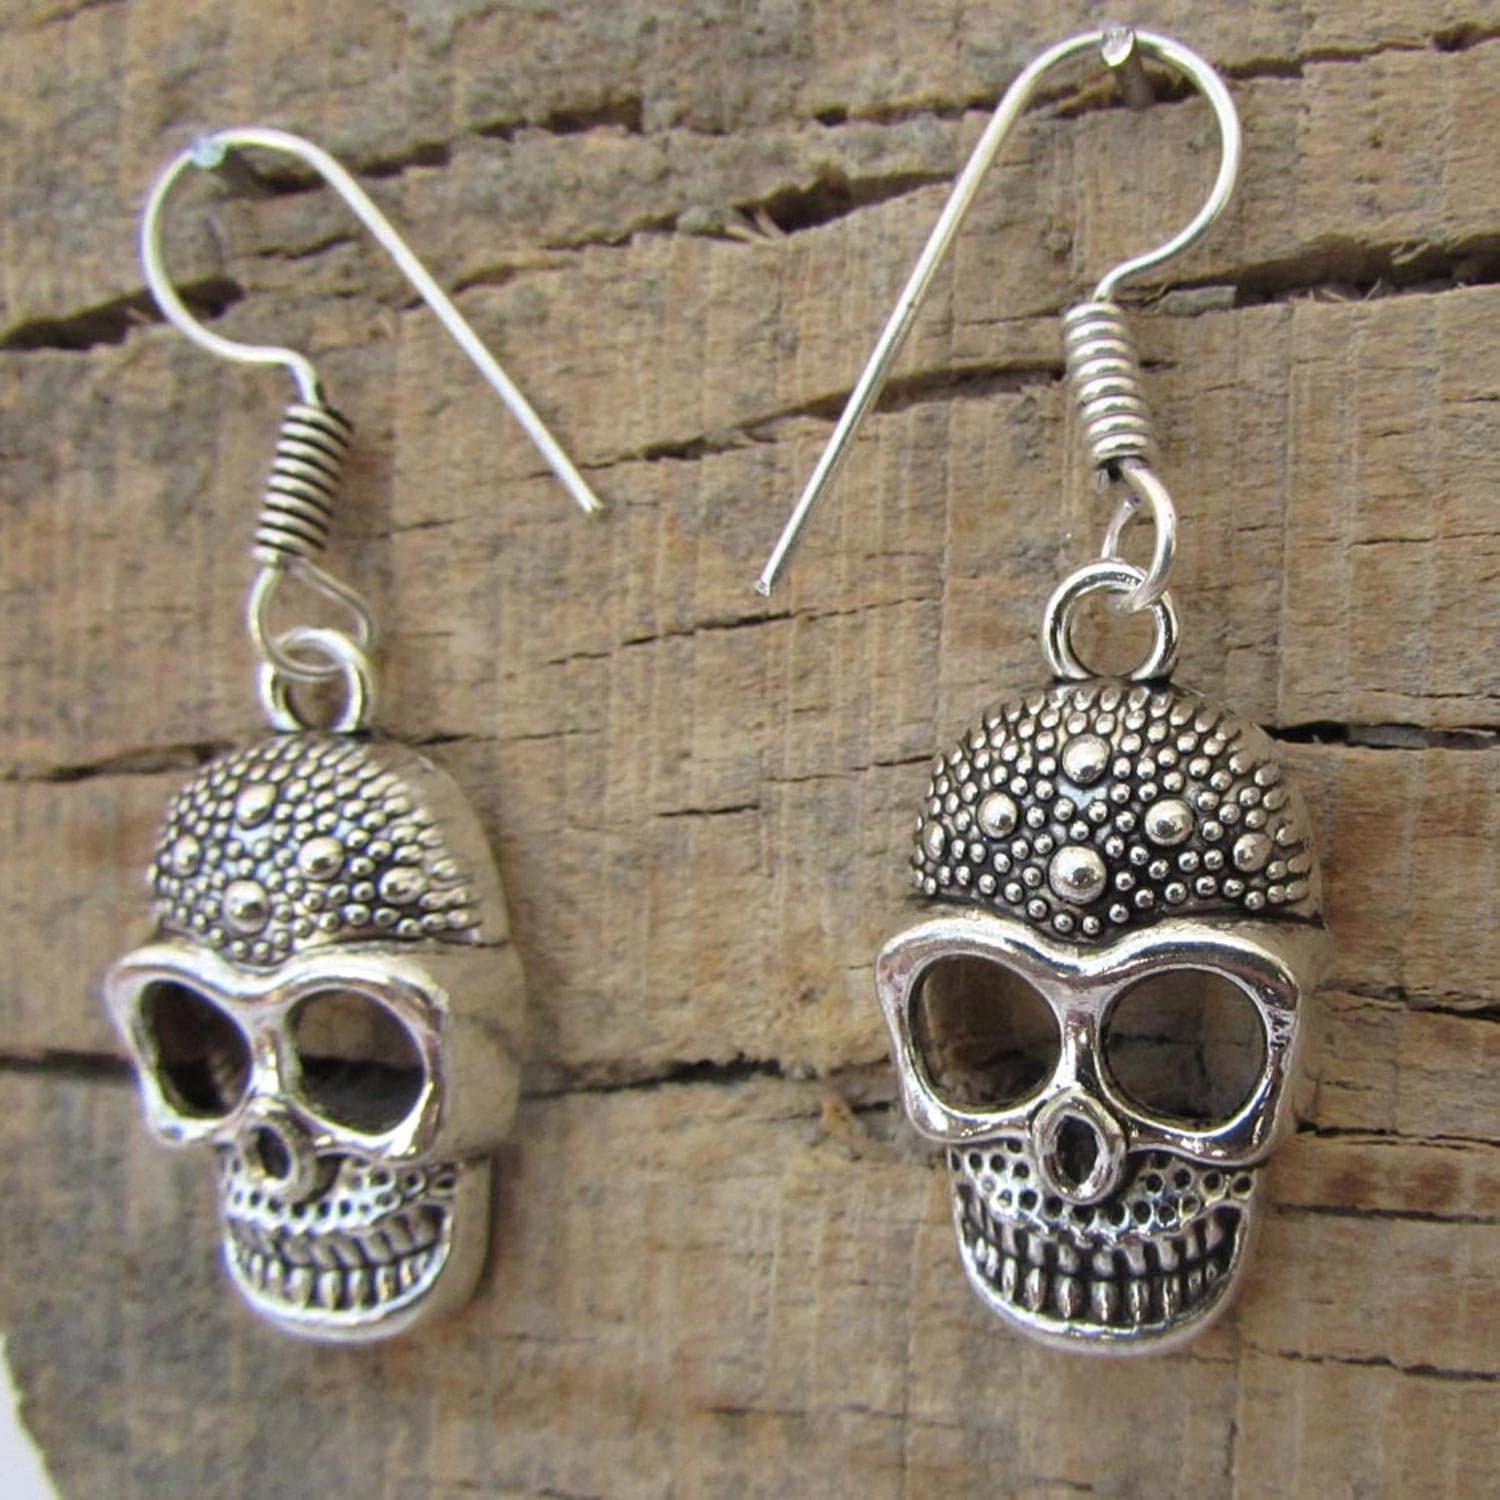 Skull Earrings Antique Silver Tribal Skull Earrings Gothic - Etsy